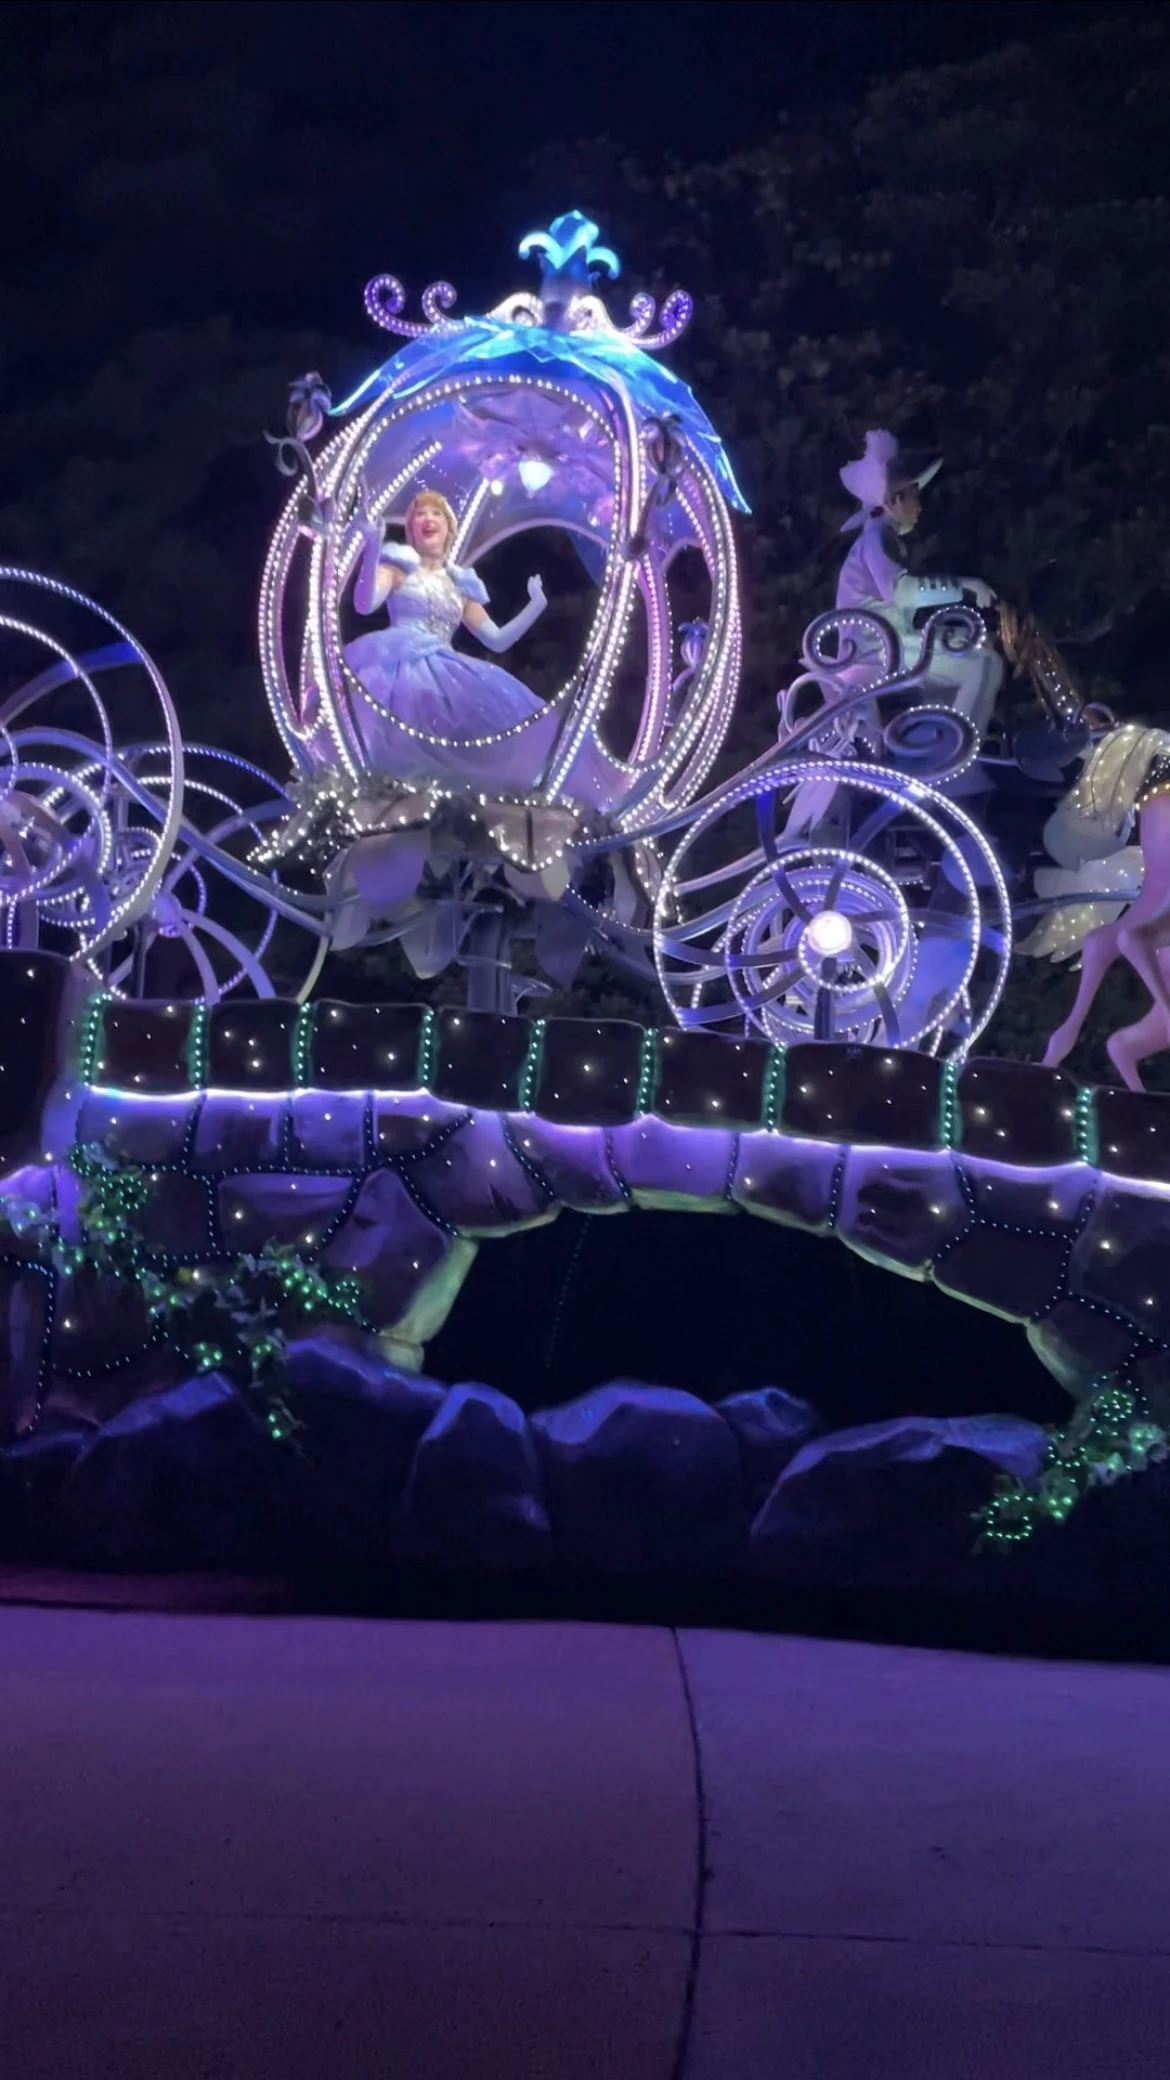 東京ディズニーランド・エレクトリカルパレード・ドリームライツ シンデレラの馬車のフロート シンデレラ